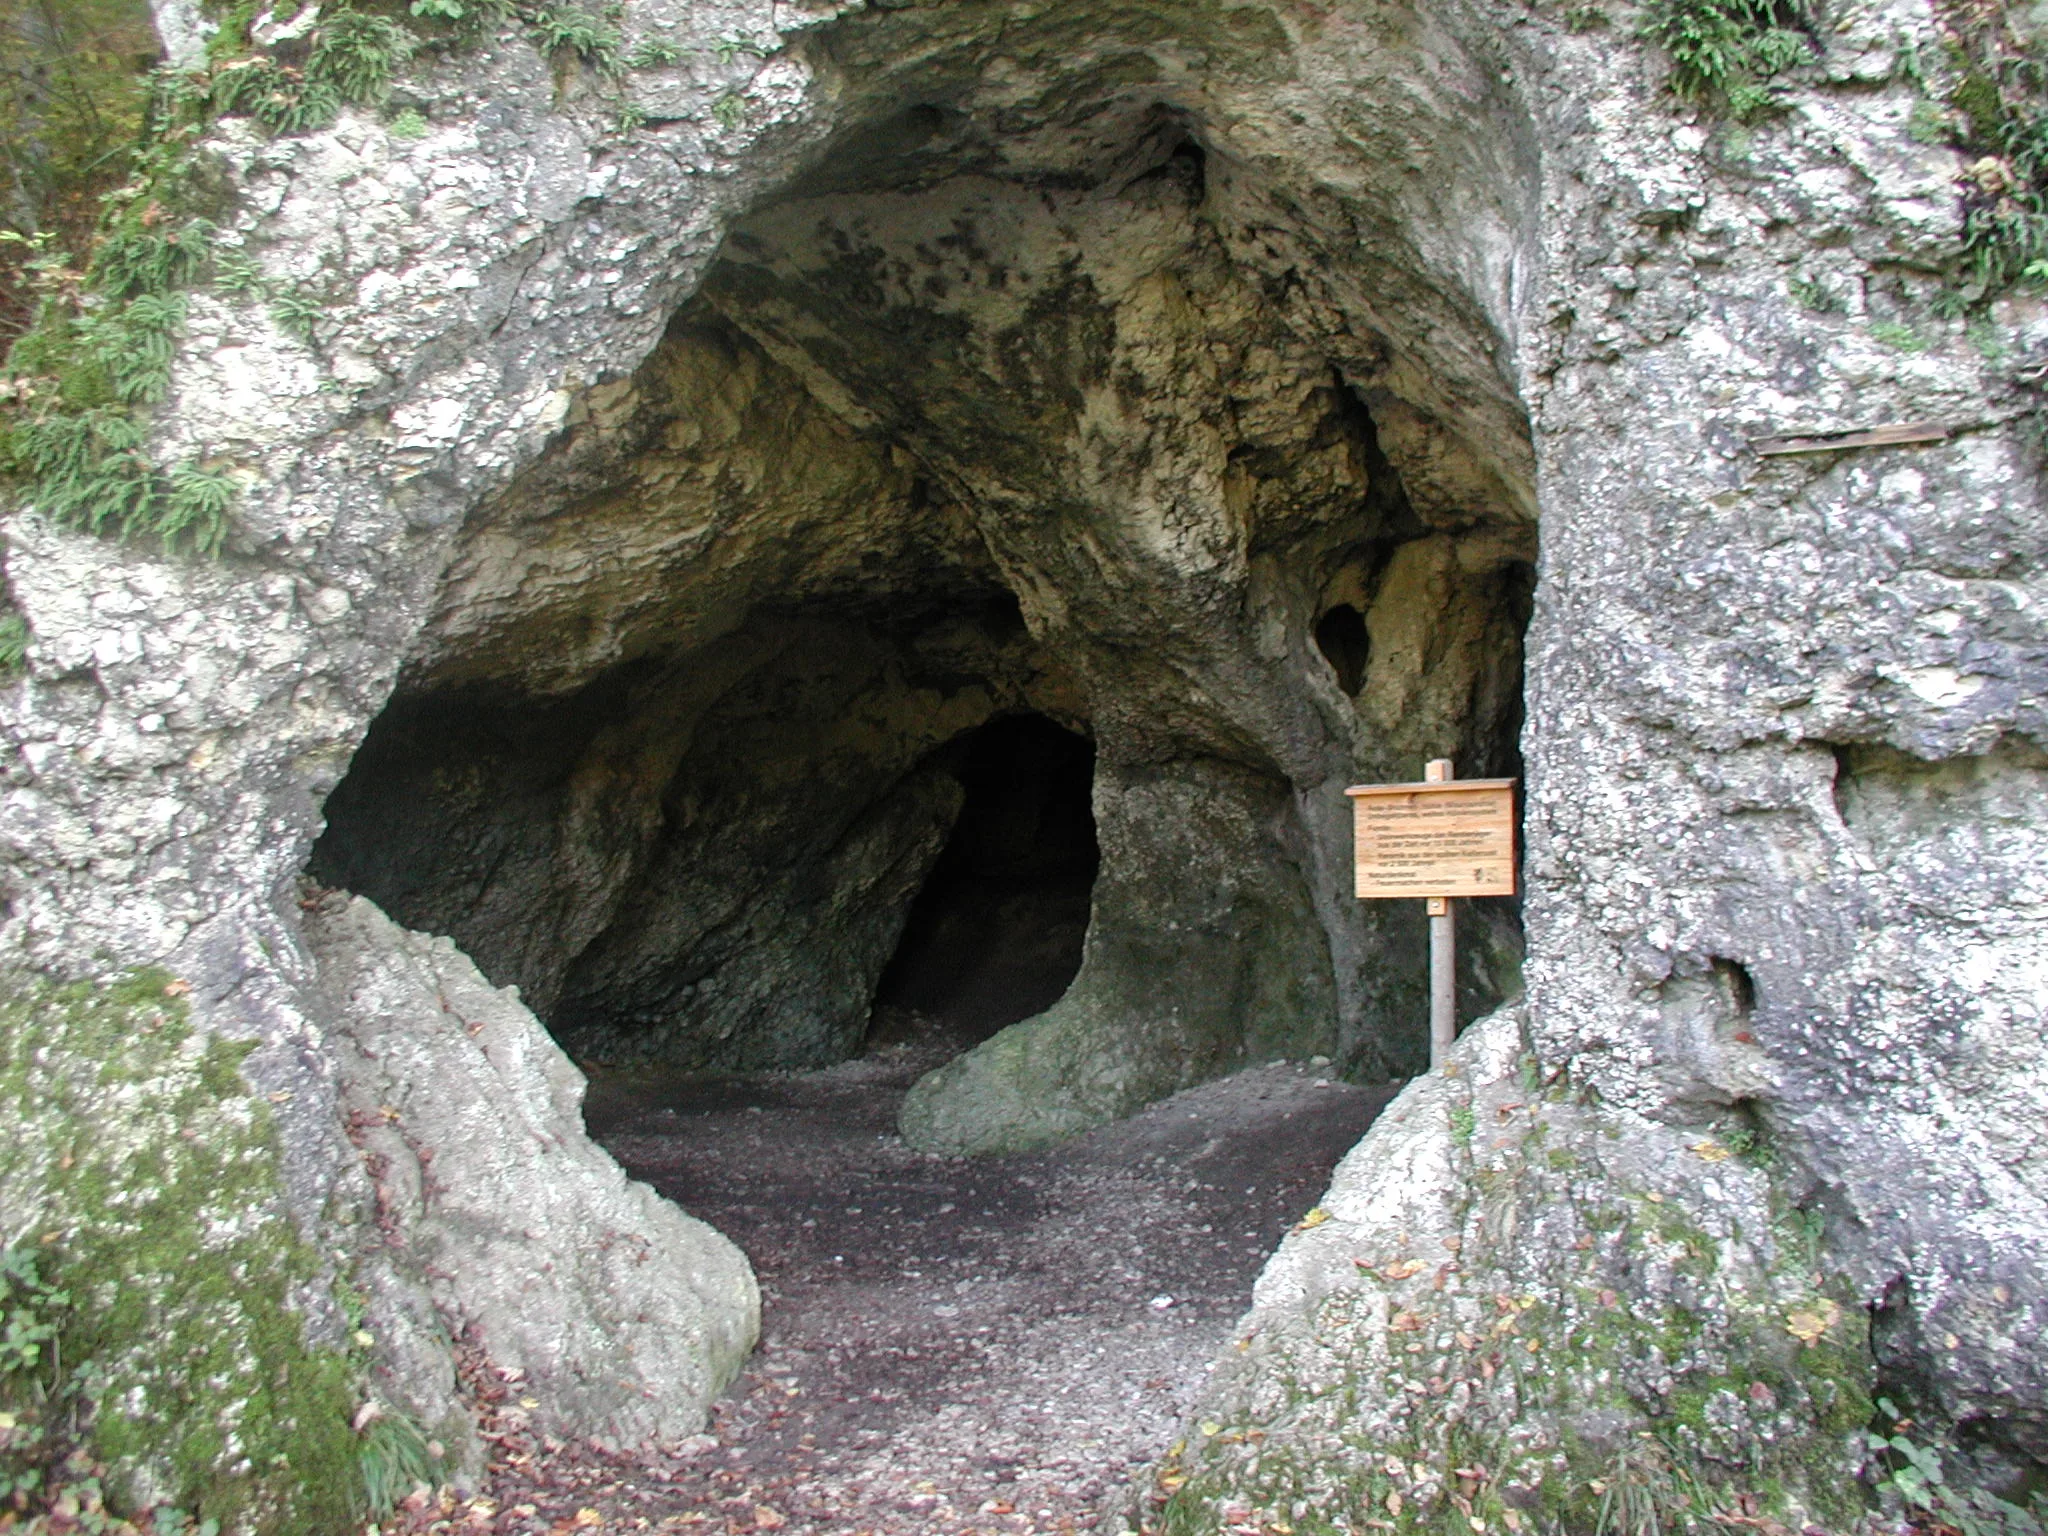 Holzschild am Eingang einer großen Höhle.